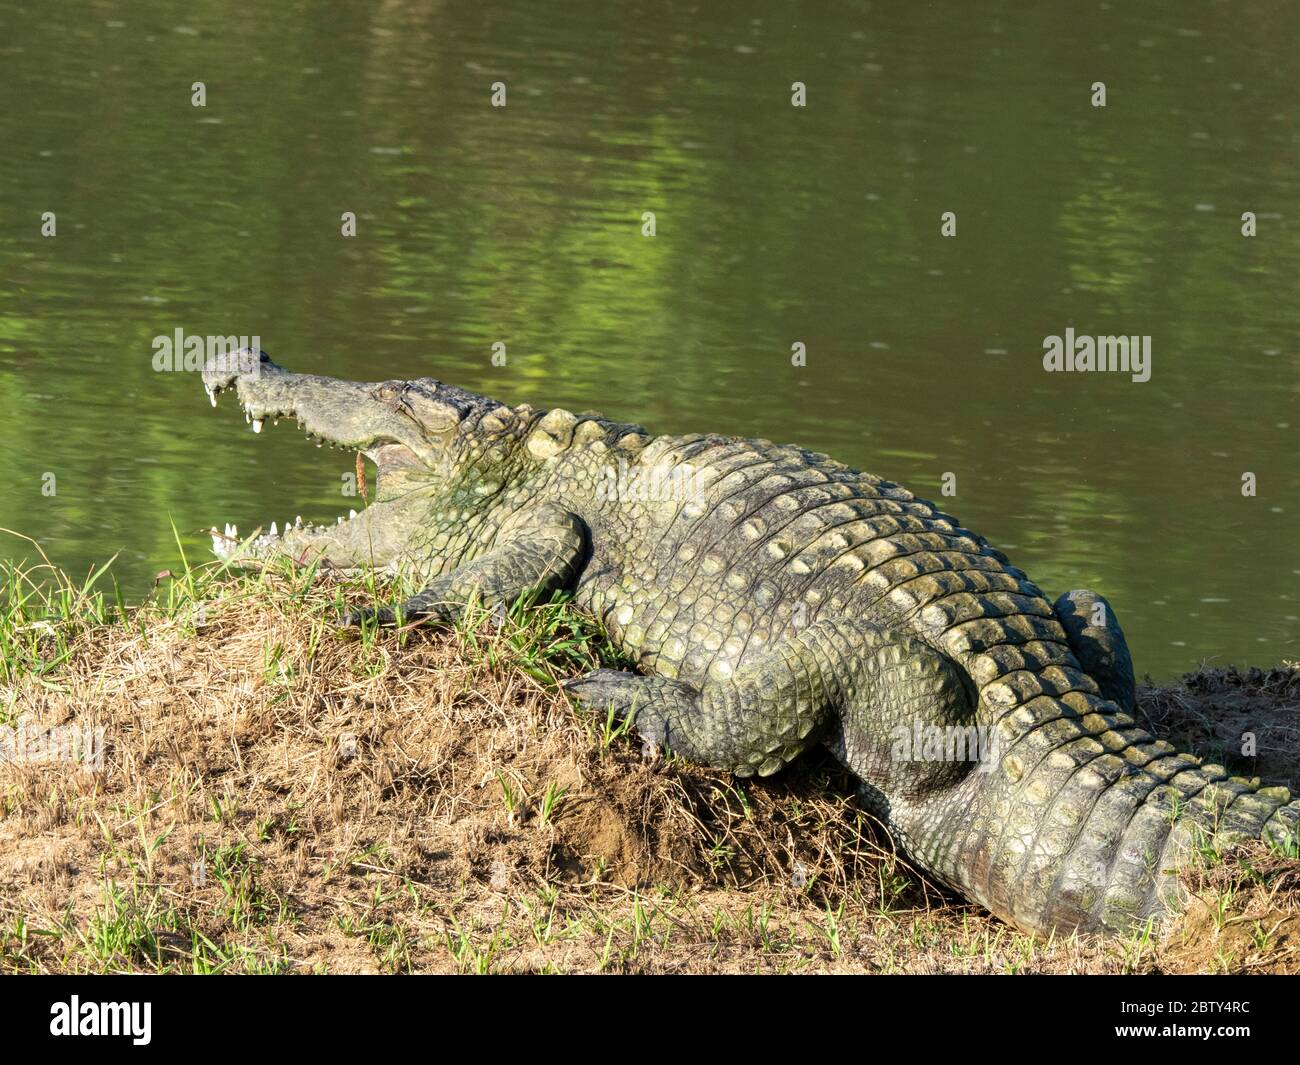 An adult mugger crocodile (Crocodylus palustris), basking in the sun, Yala National Park, Sri Lanka, Asia Stock Photo